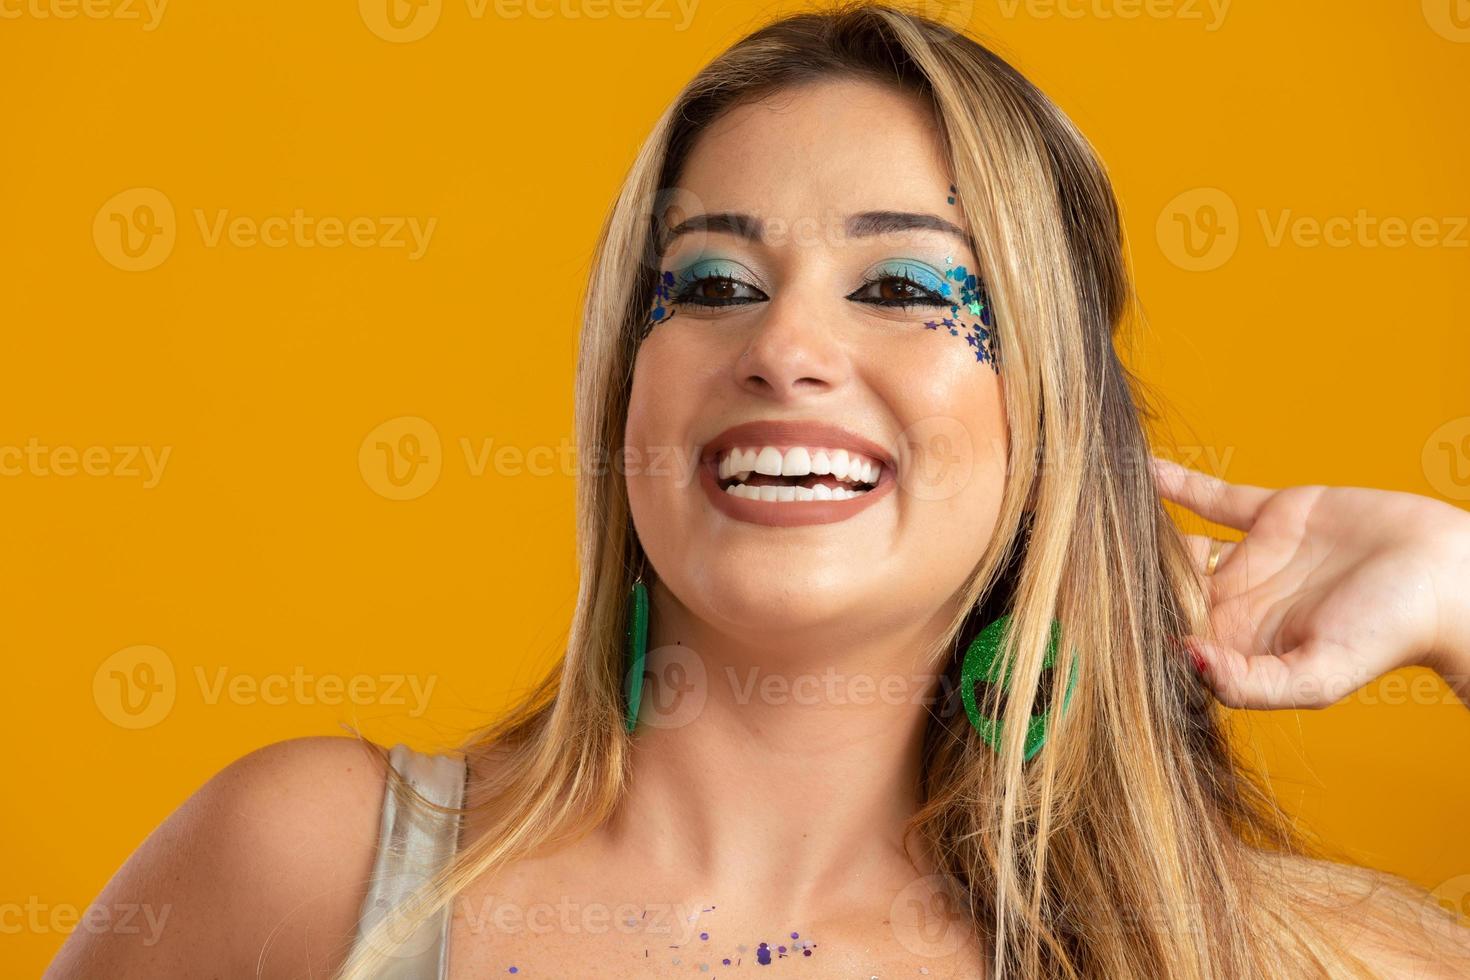 karnevals-make-up zur feier des brasilianischen karnevals. Schminktrend und Accessoires für den Karneval. foto